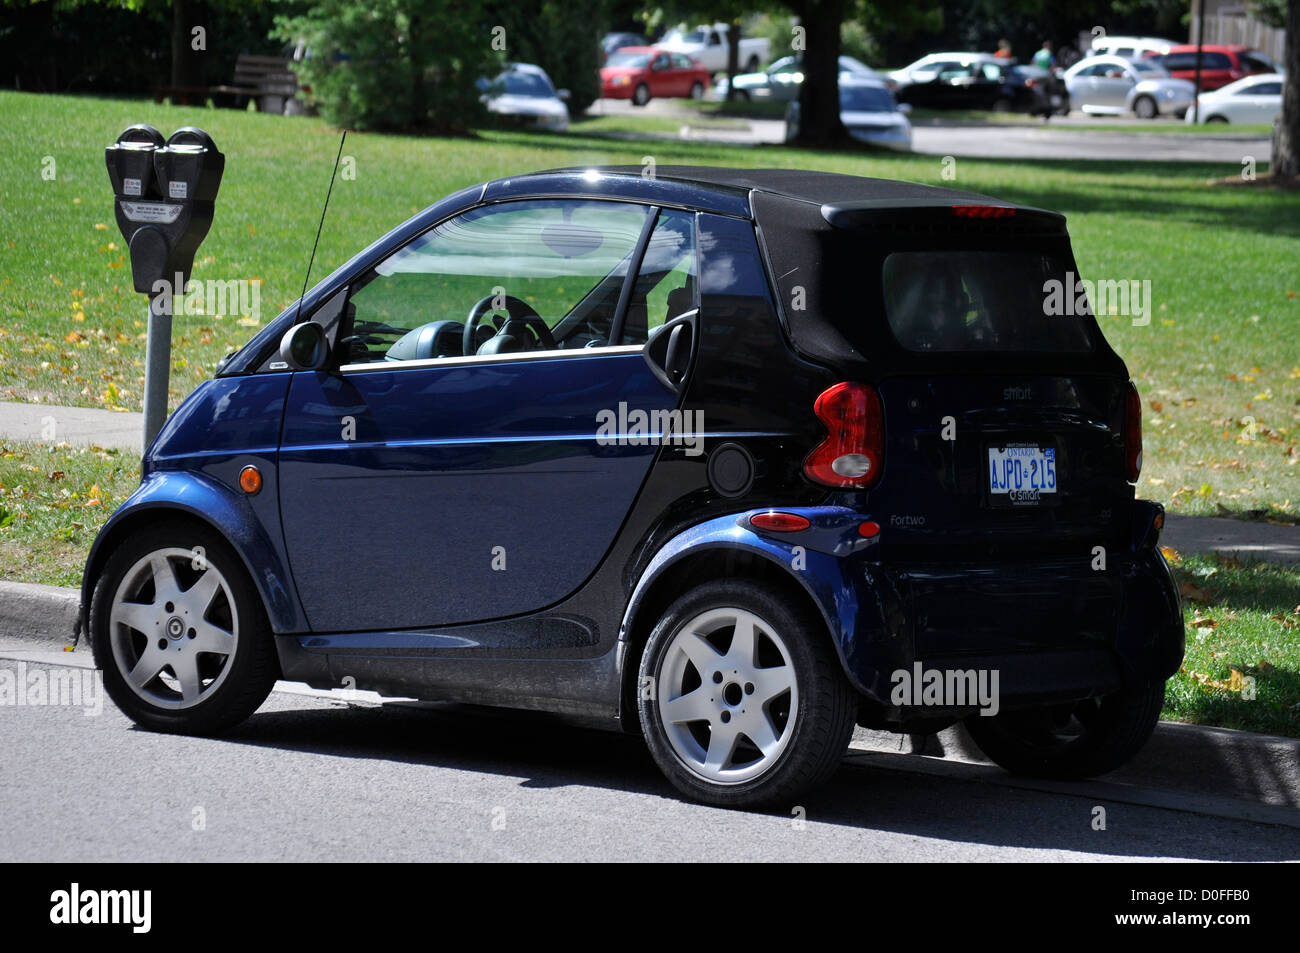 Ein sehr kleines Smart-Auto, das an einem Straßenmesser in Ontario, Kanada, geparkt wurde. Zeitlich begrenzt. Münzbetrieb. Wohngebiet. Konventionell. Nicht elektrisch. Stockfoto